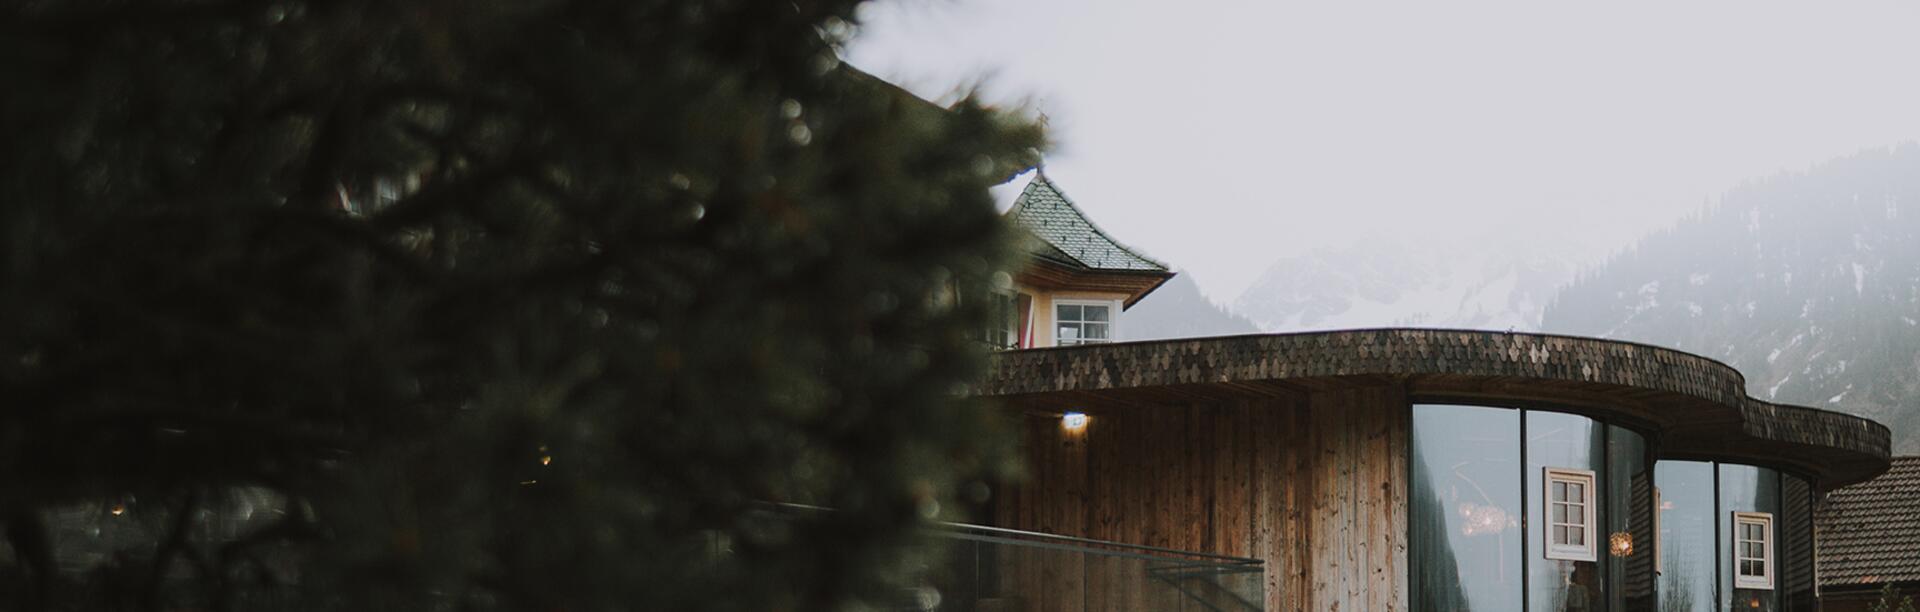 Außenansicht Hotel mit Pool und Bäumen im Vordergrund | Der Engel in Tirol